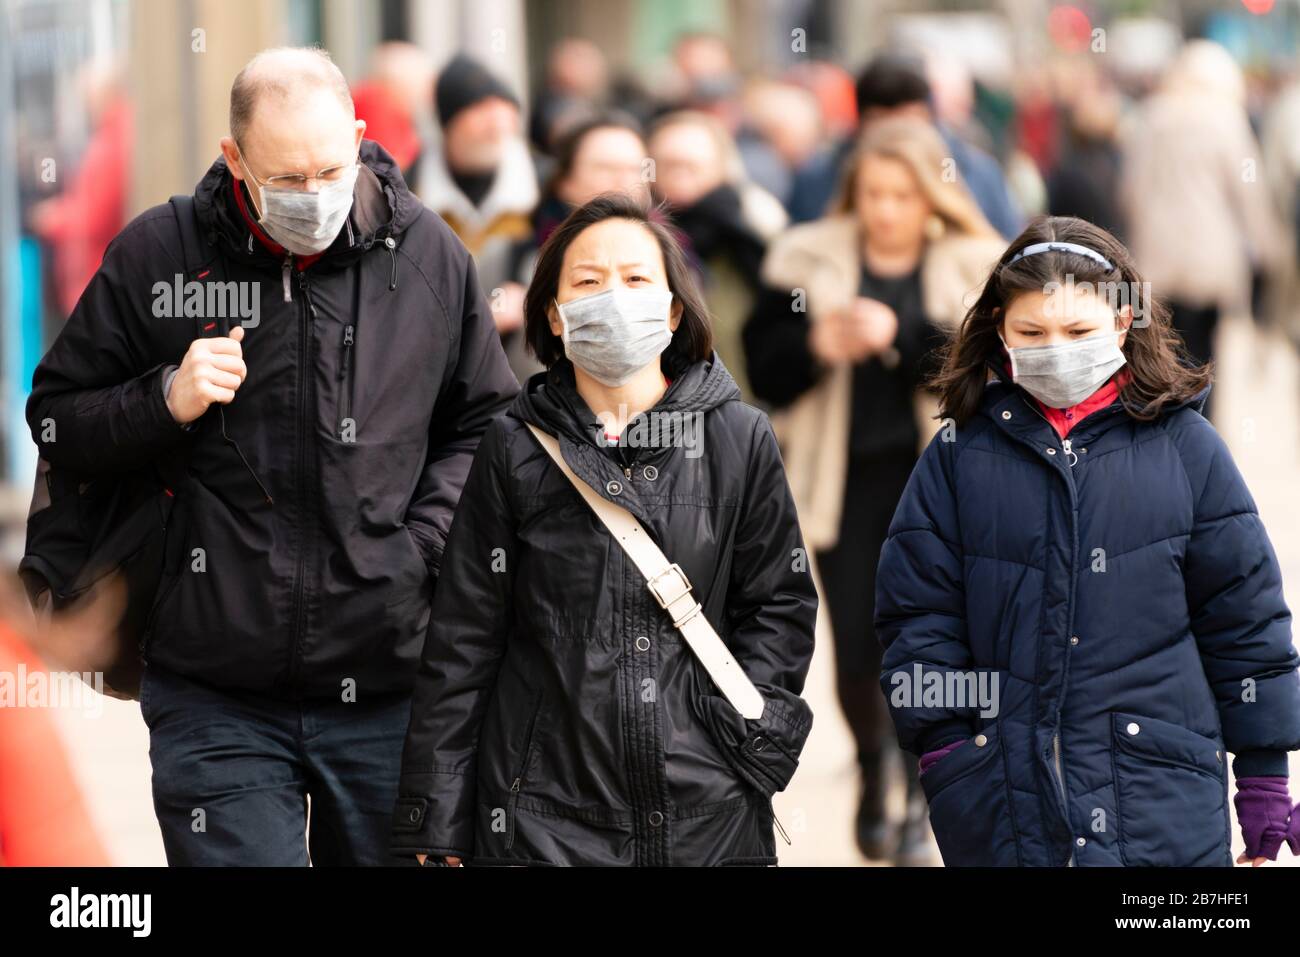 Edimburgo, Scozia, Regno Unito. 16 marzo 2020. Effetti di Coronavirus nel centro di Edimburgo oggi. Persone che ricoprono i volti con maschere facciali. Iain Masterton/Alamy Live News Foto Stock